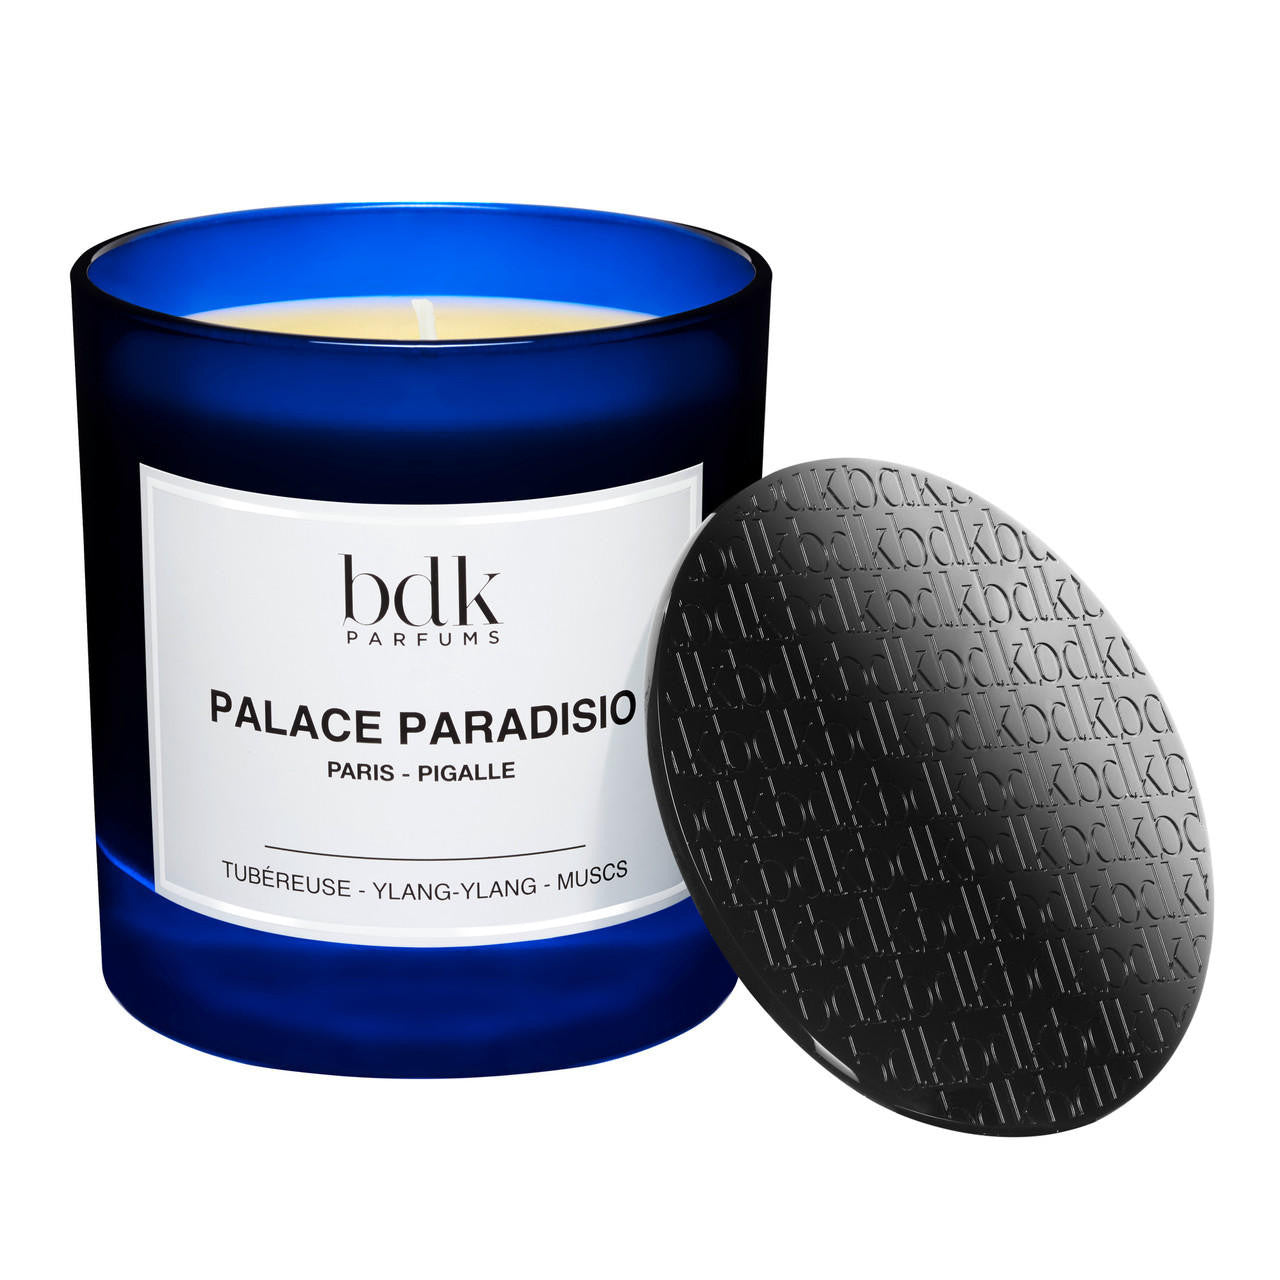  BDK Parfums PALACE PARADISIO Candle 